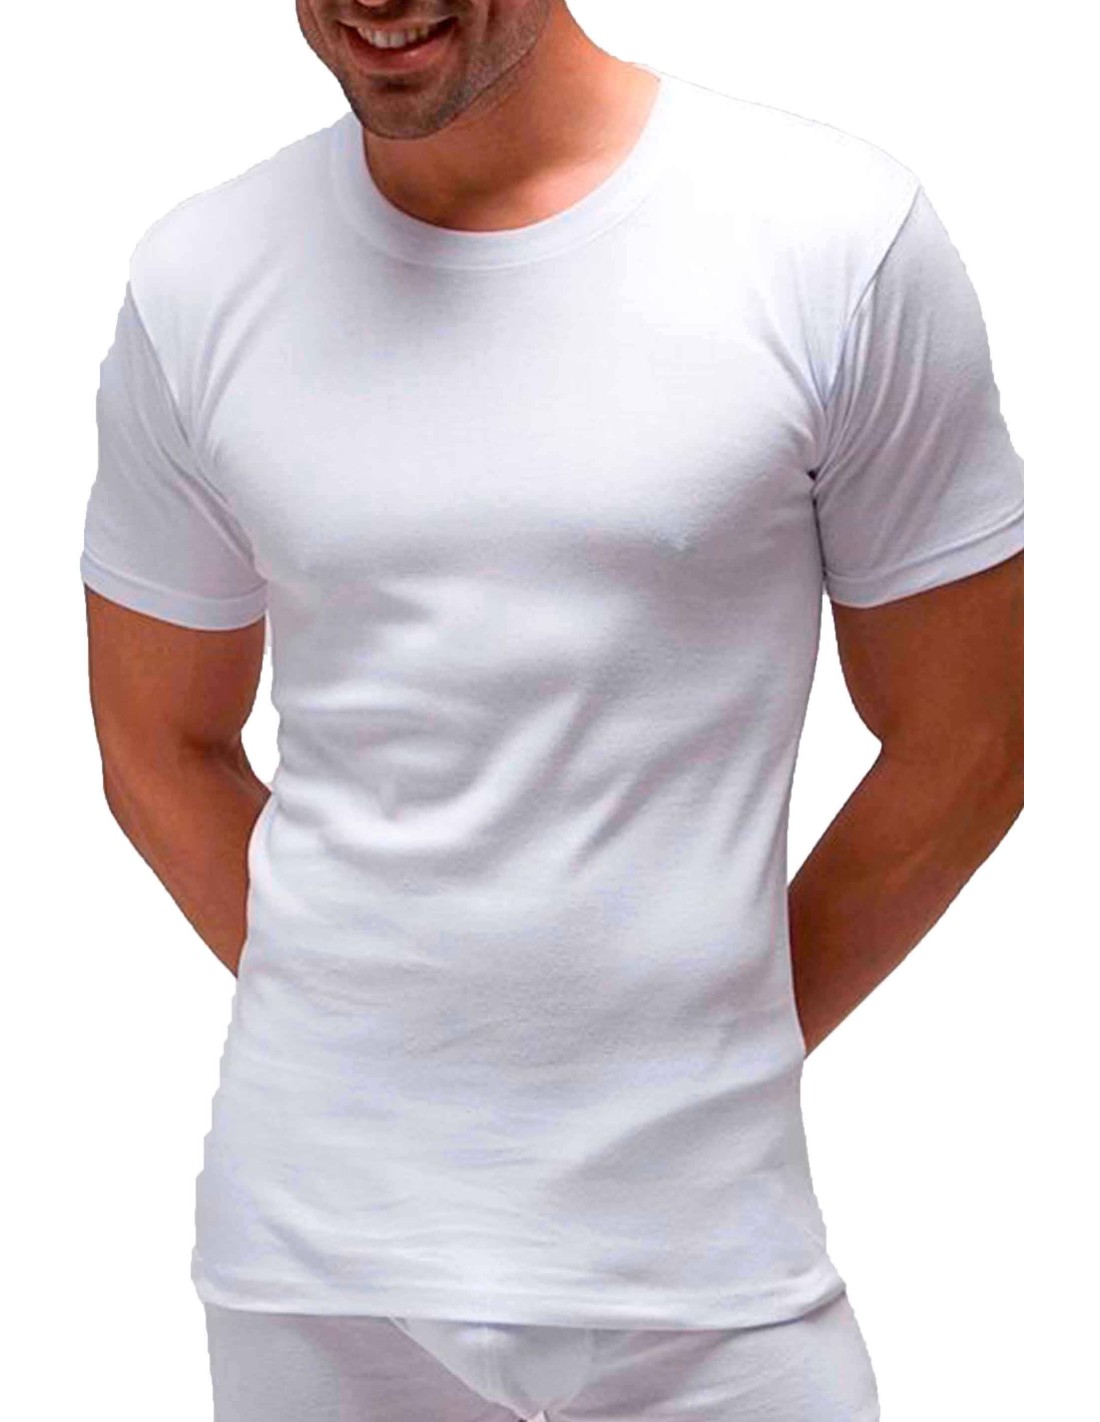 Camisetas de algodón ligero para hombre (manga corta y larga)